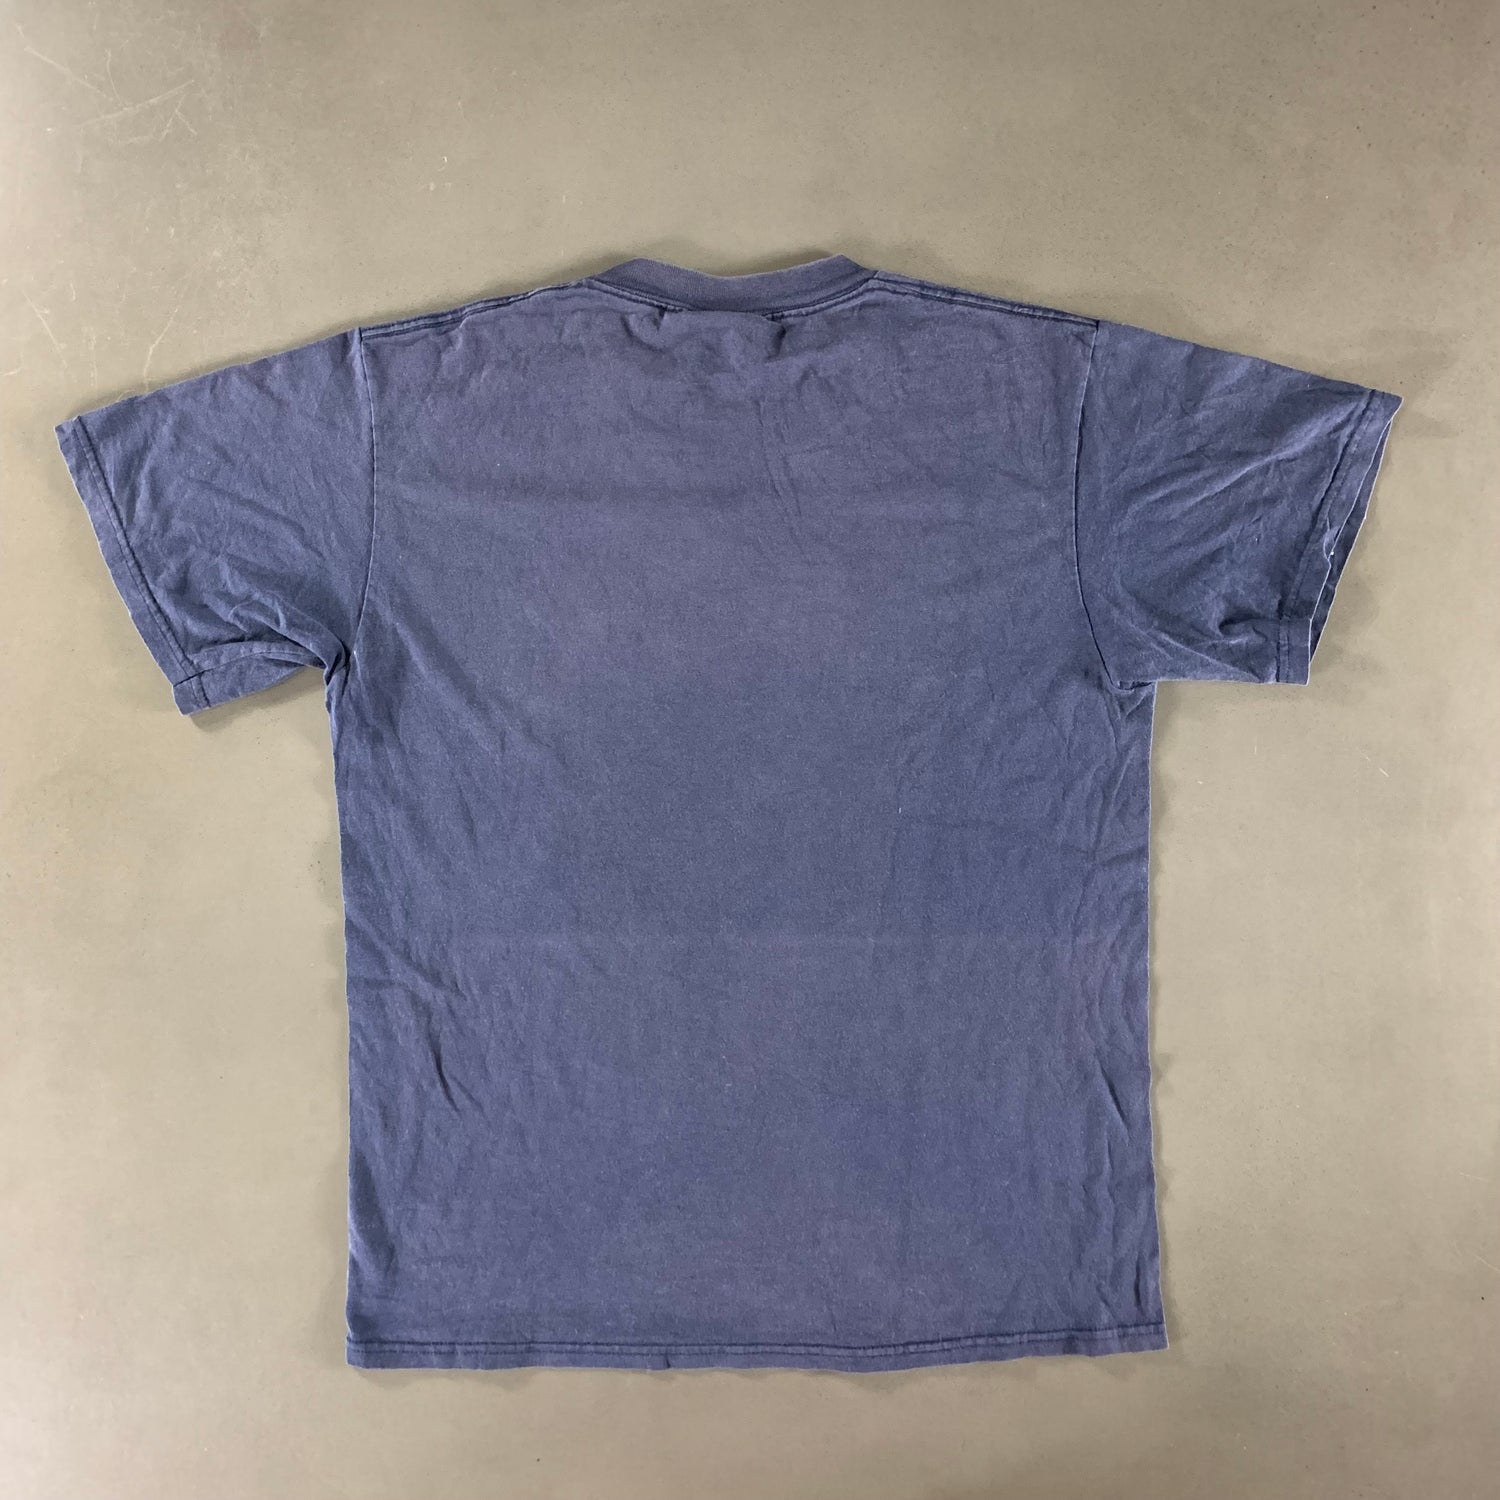 Vintage 1990s Syracuse University T-shirt size Medium